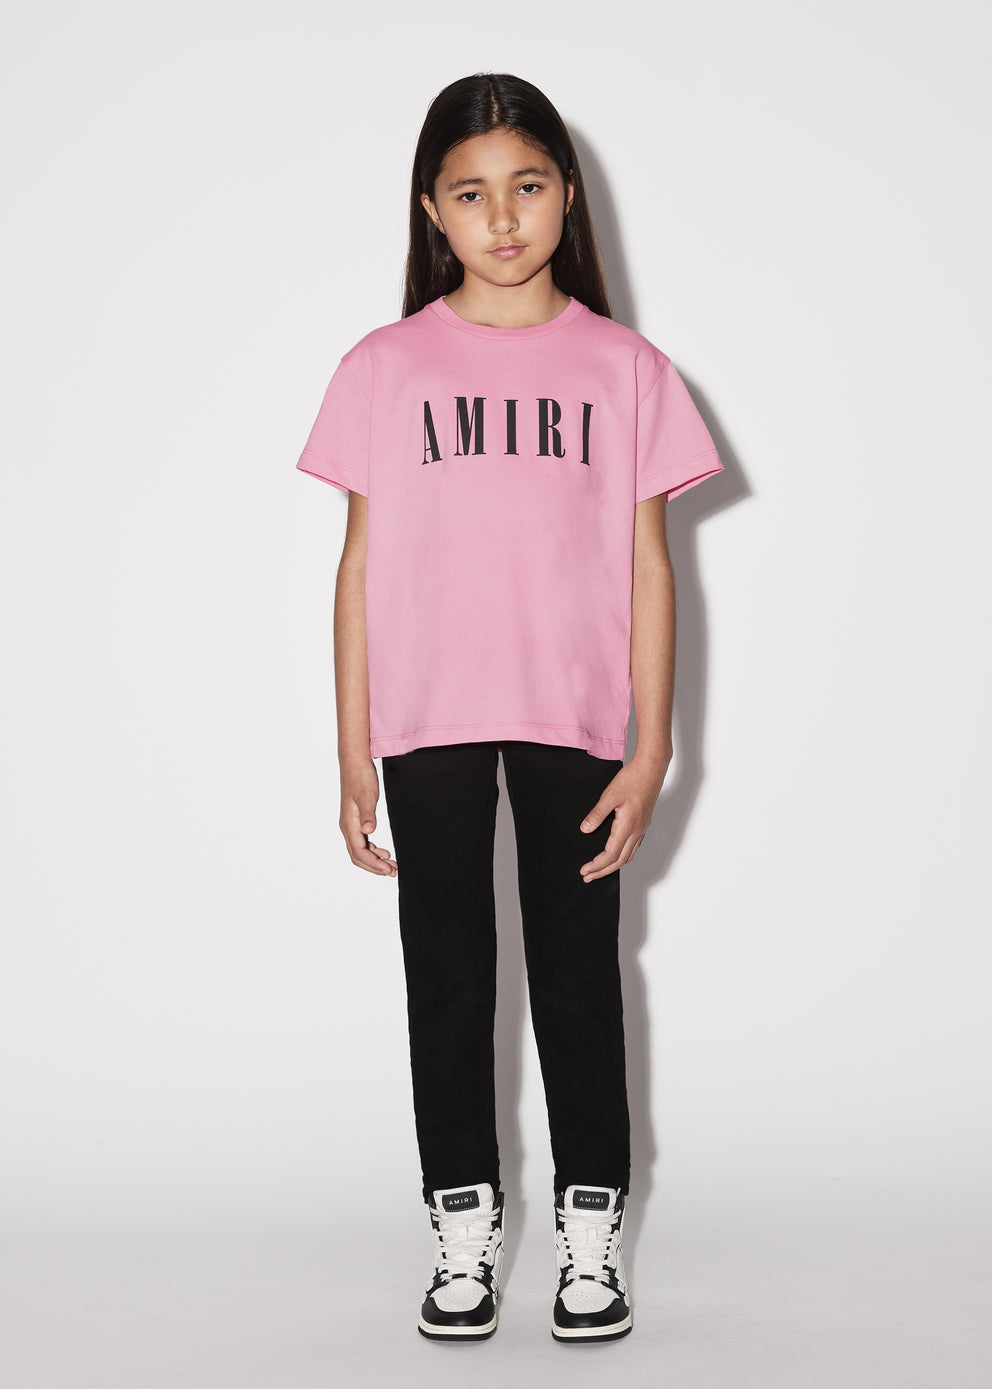 Camisetas Running Amiri   Niños Rosas | 8305IURXE